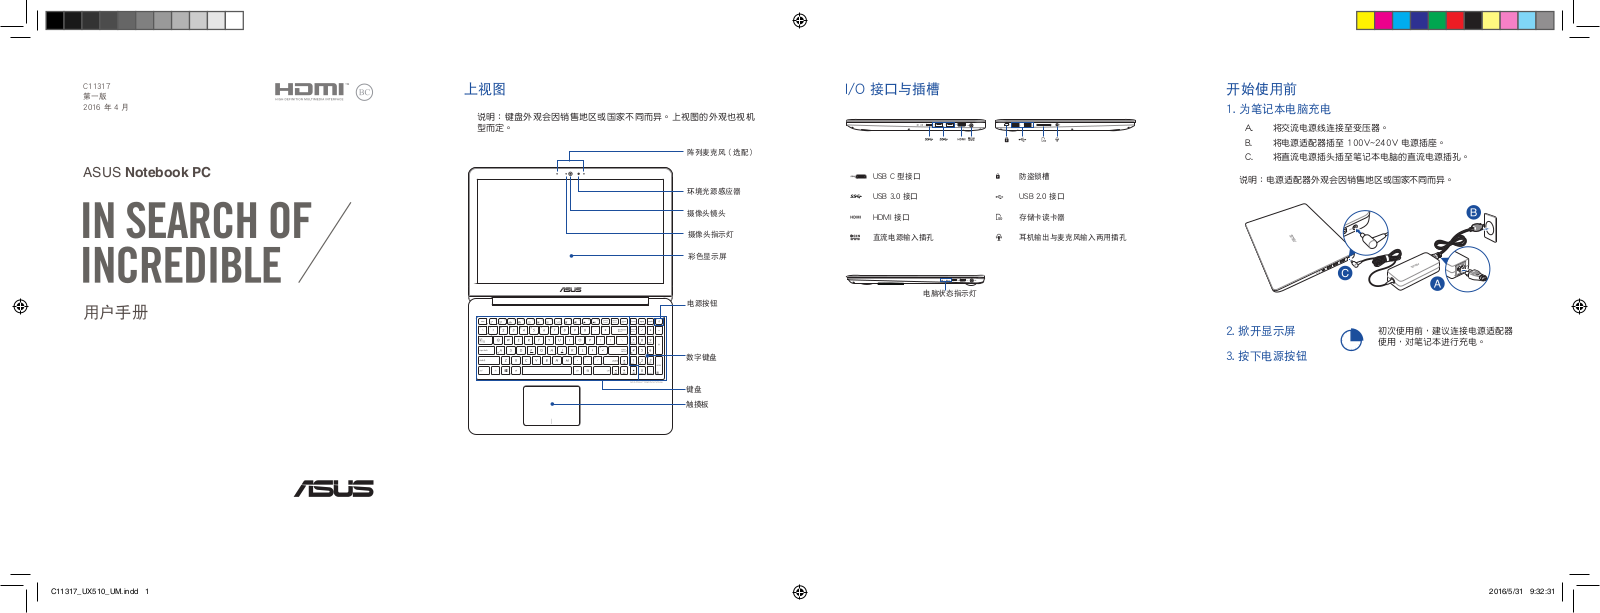 Asus U5000UX, UX510UX, V510UX User’s Manual